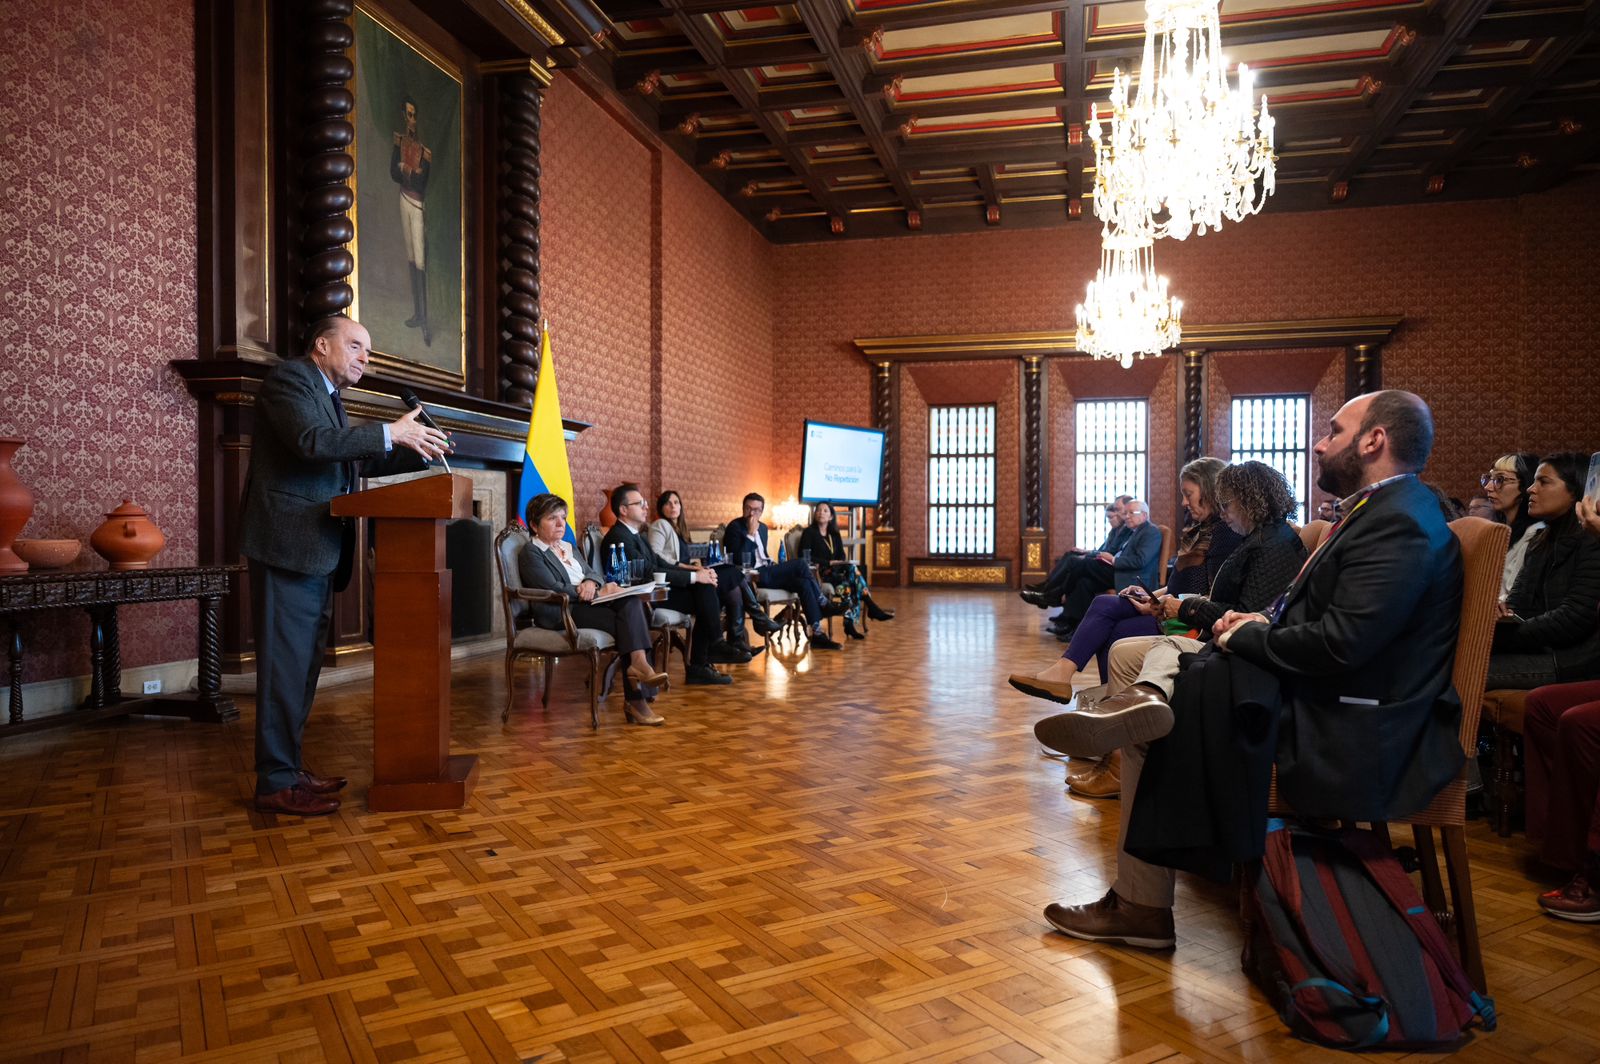 La Cancillería de Colombia sigue impulsando la Agenda de No Repetición con paneles para compartir experiencias en torno a la verdad, la memoria y la justicia